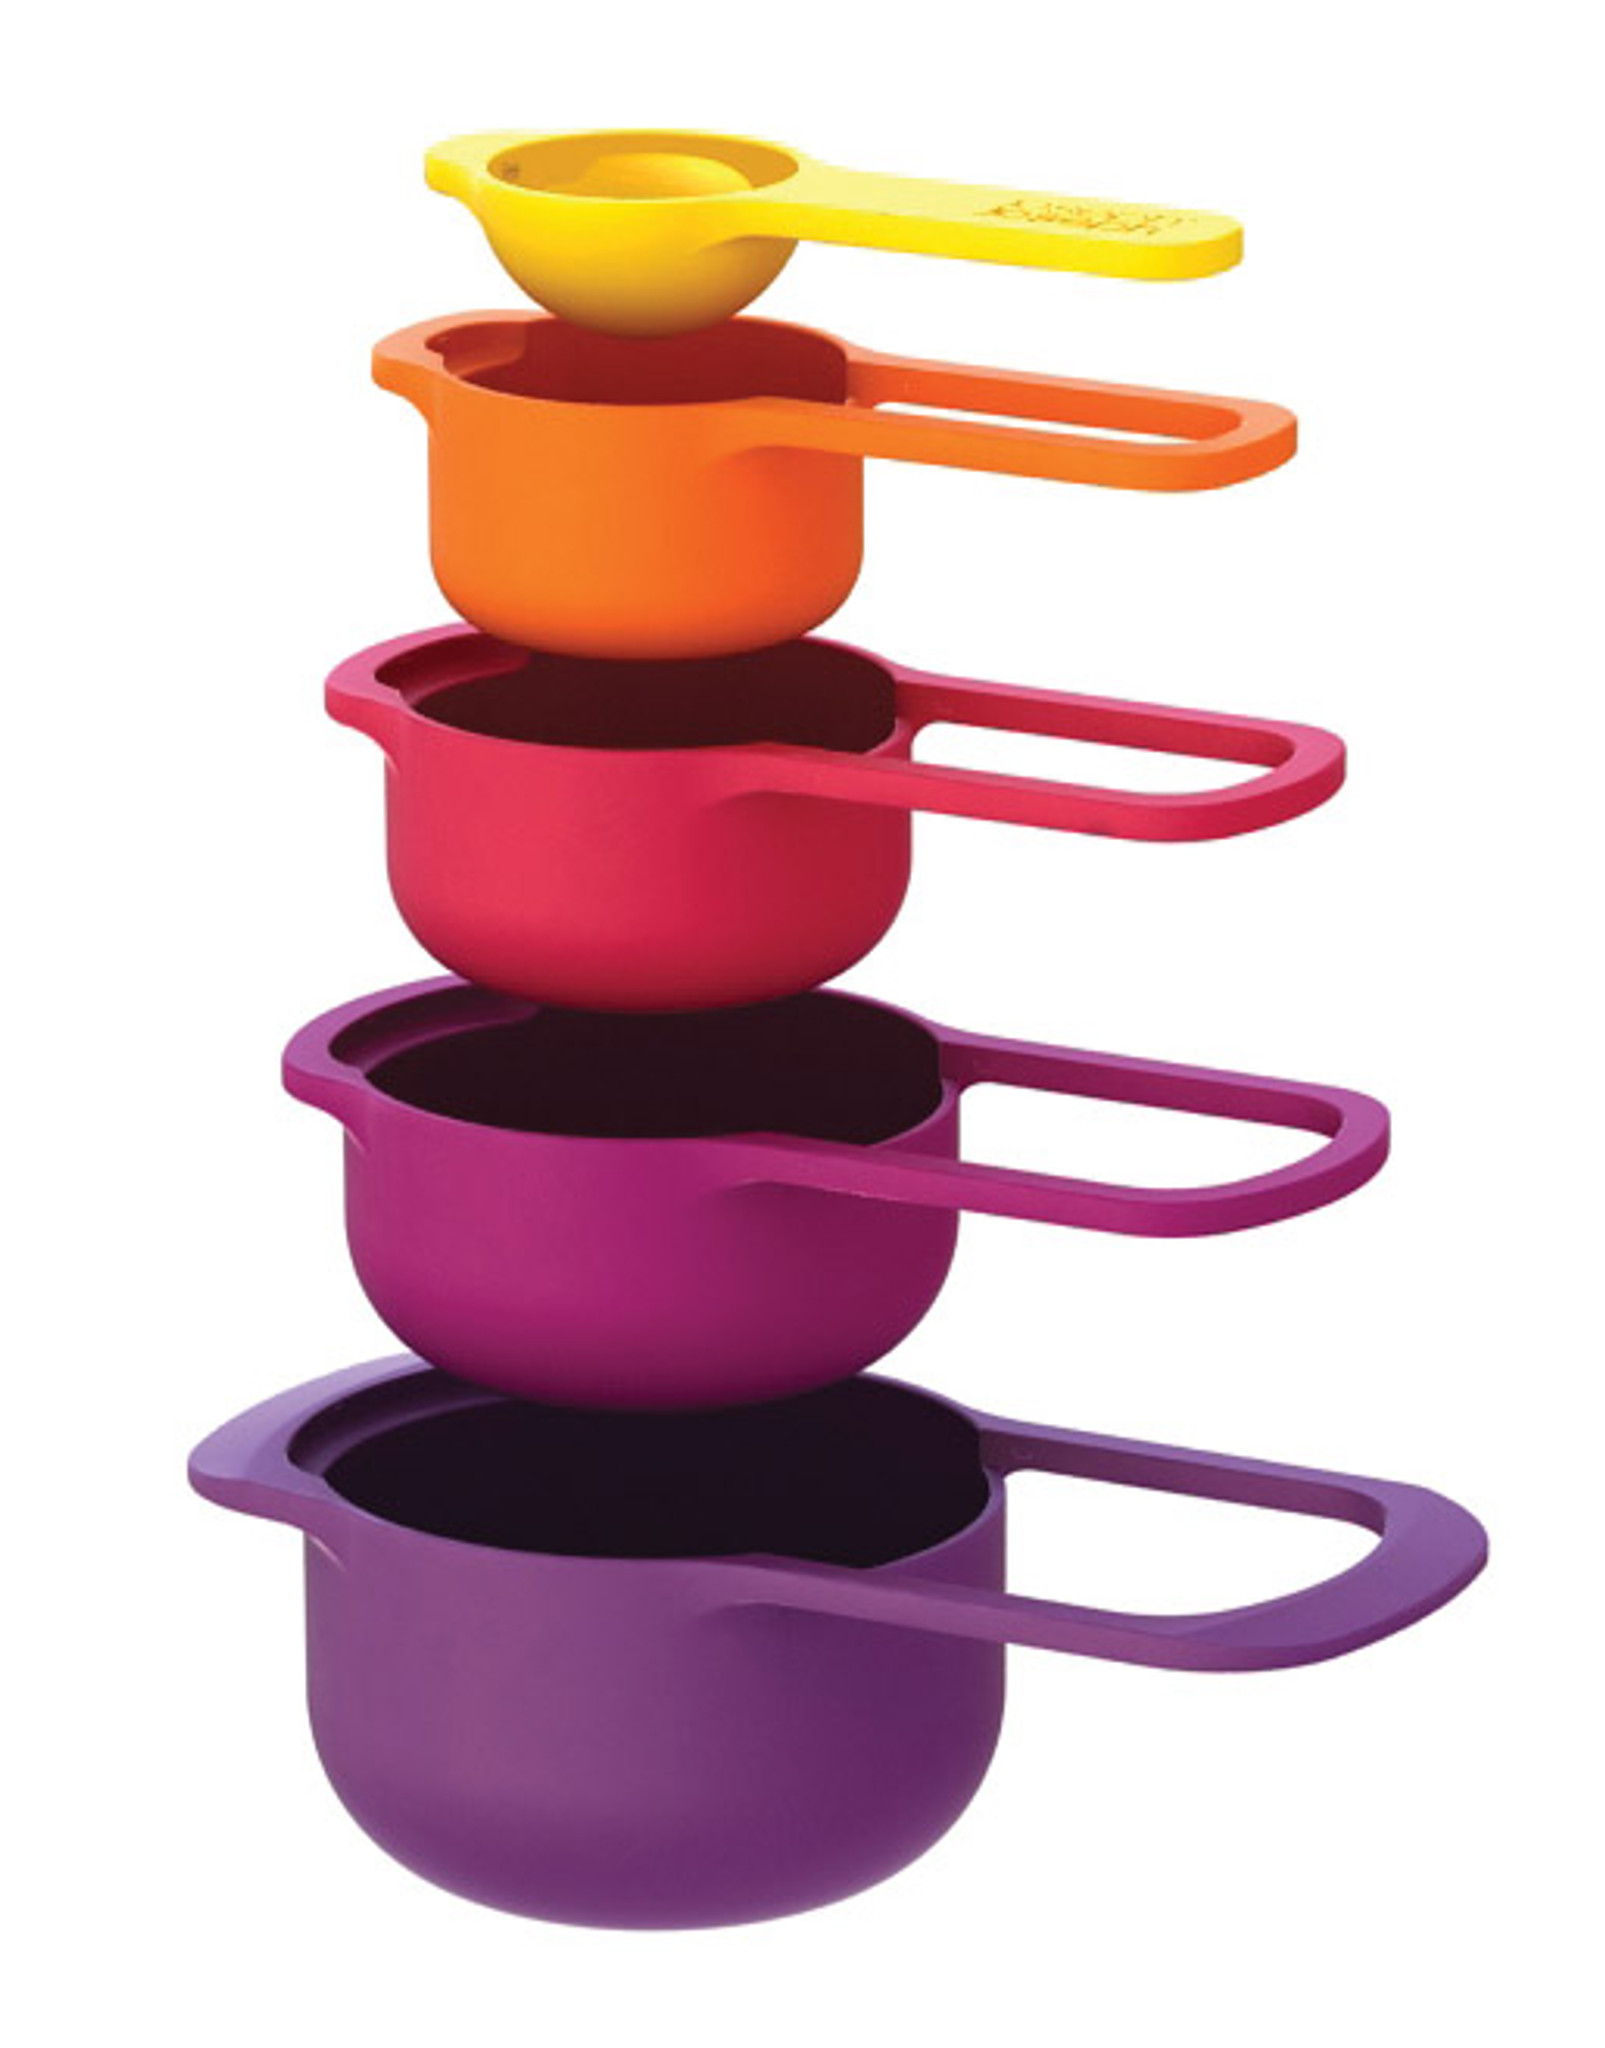 Joseph Joseph Nest™ Cups - MultiColour 8 piece